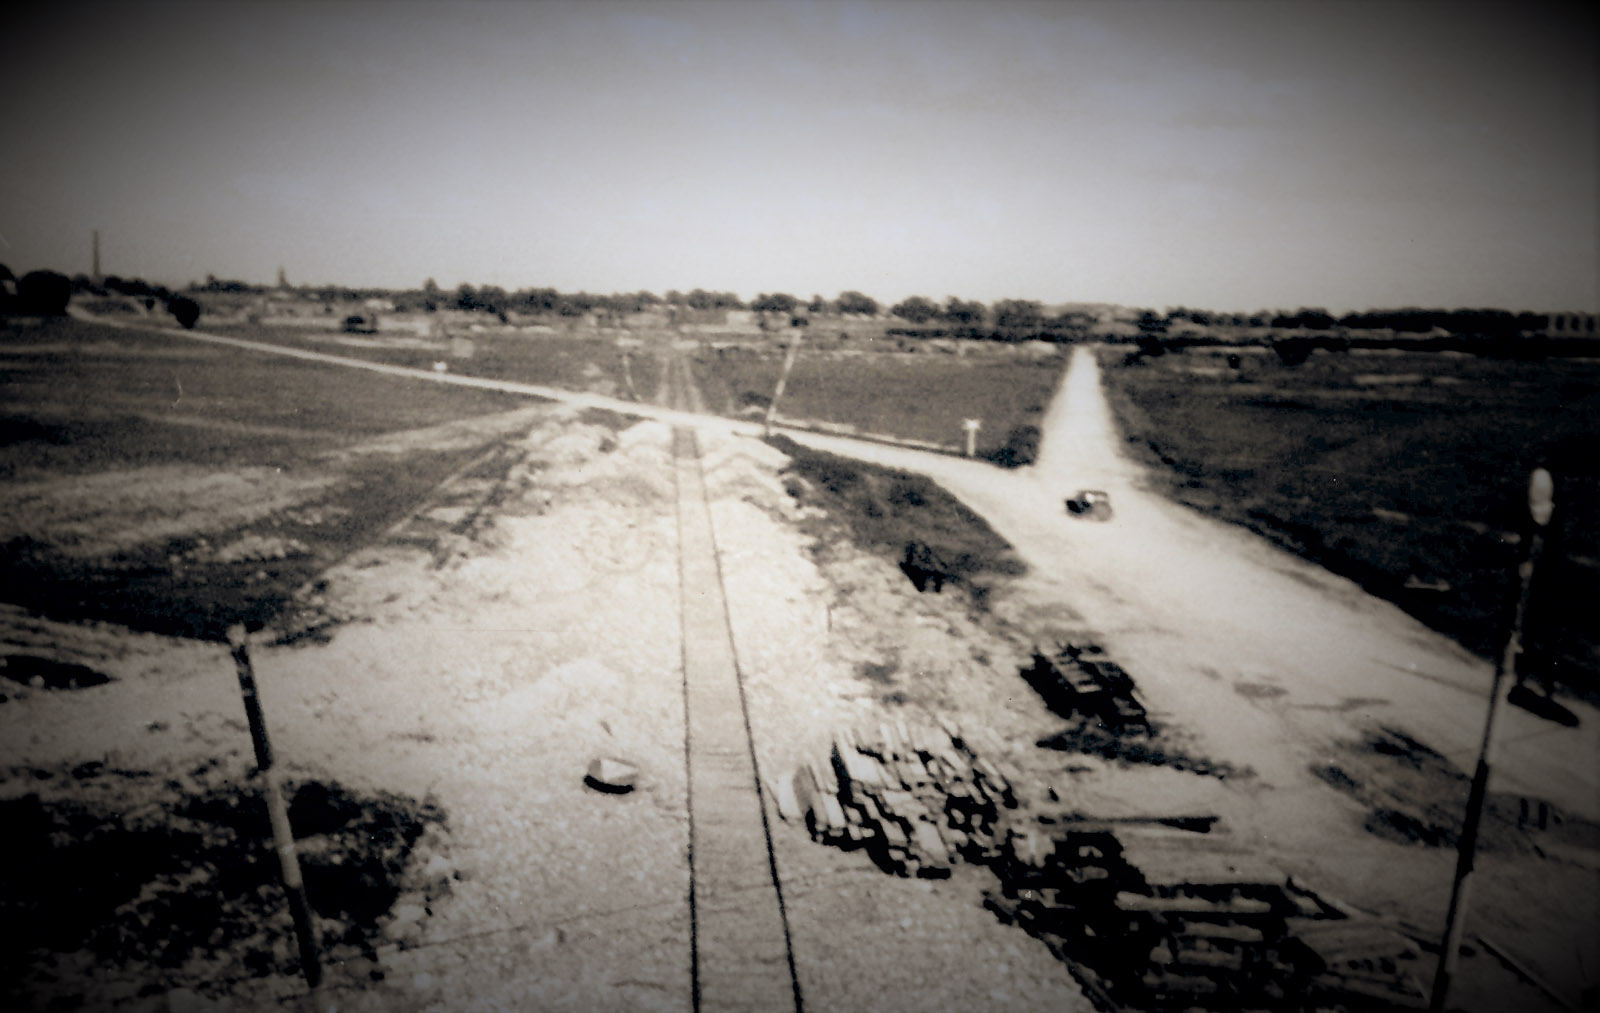 Tory kolejowe prowadzące do byłego KL Auschwitz II-Birkenau, 29 maja 1945. Fot. Stanisław Kolowca, Archiwum IPN